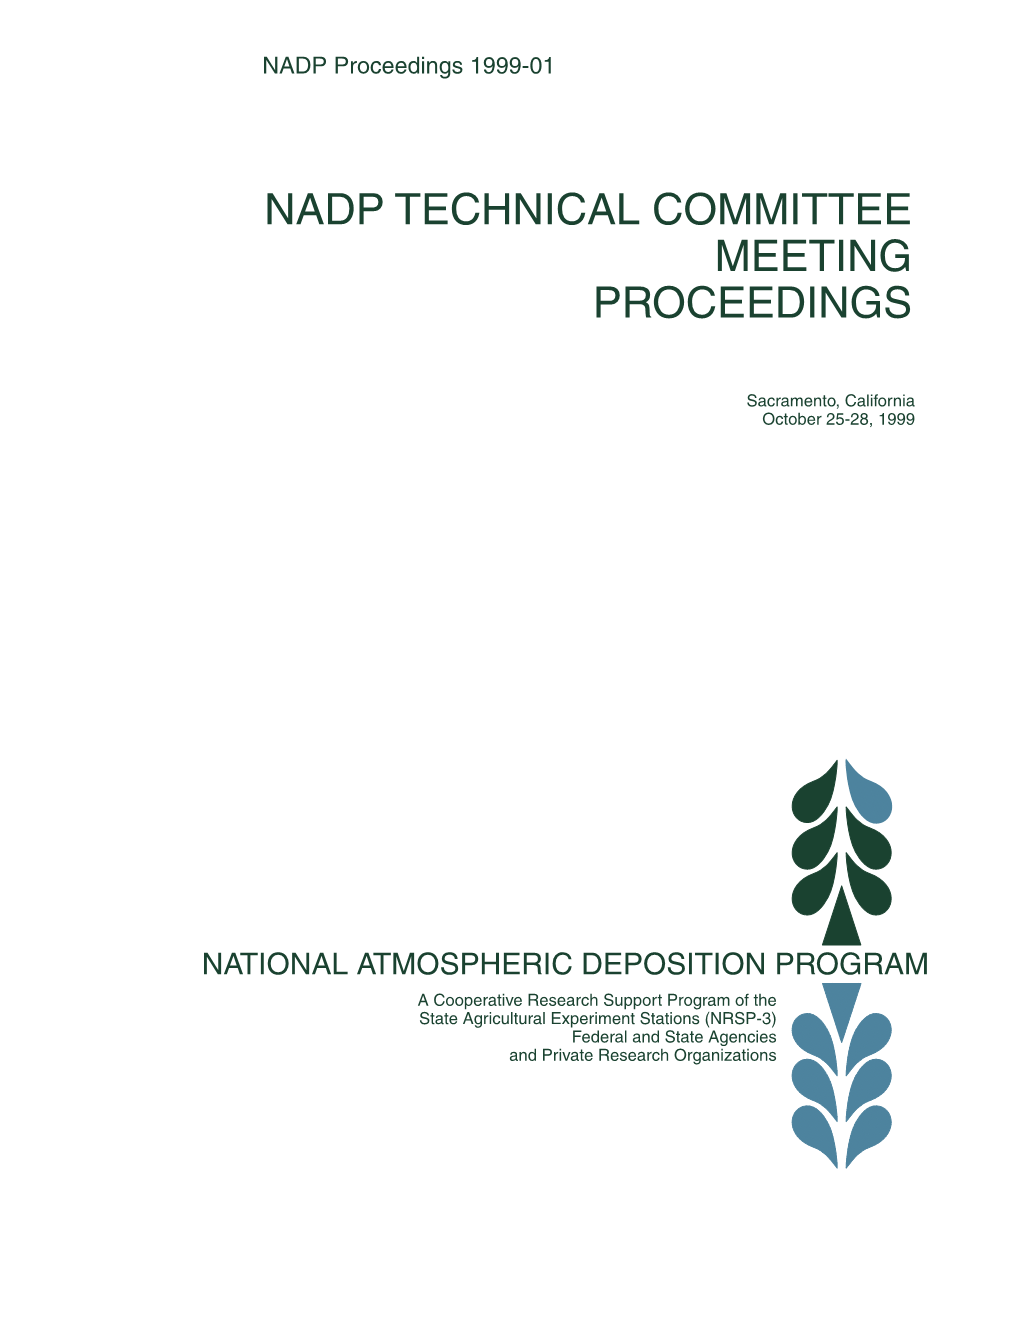 NADP Proceedings 99-01